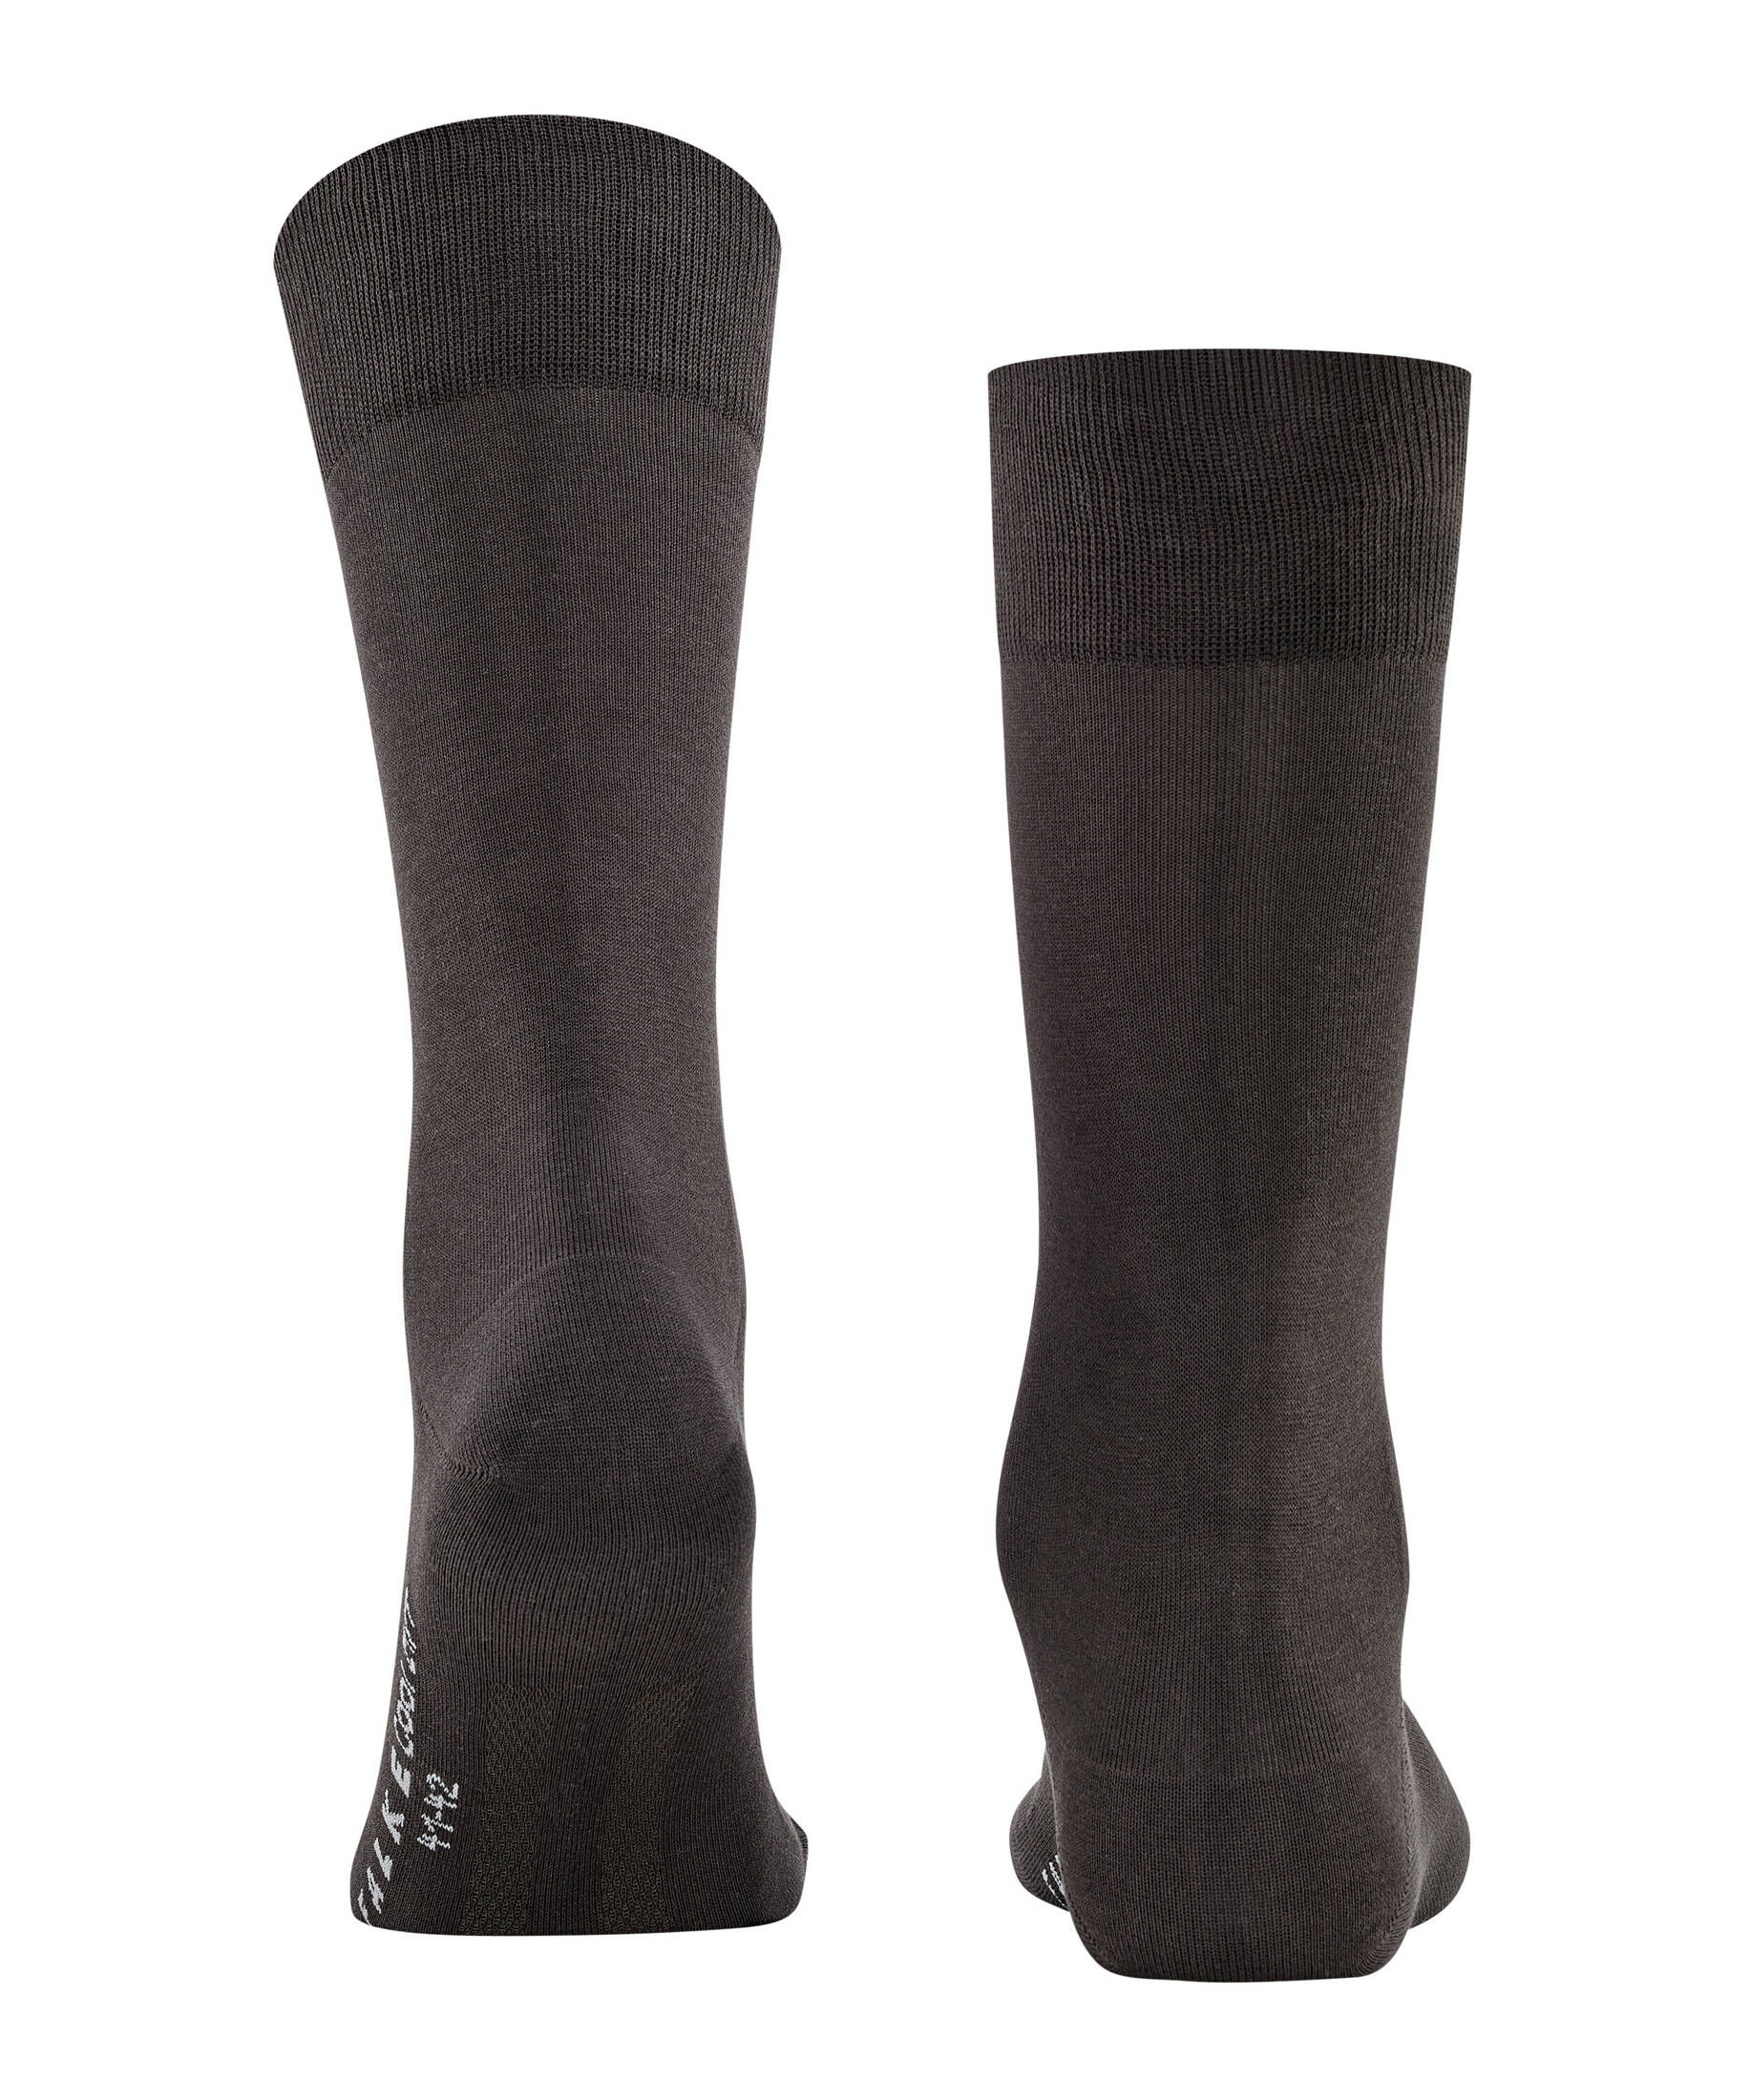 FALKE Herren Socken 24/7" kaufen | engelhorn